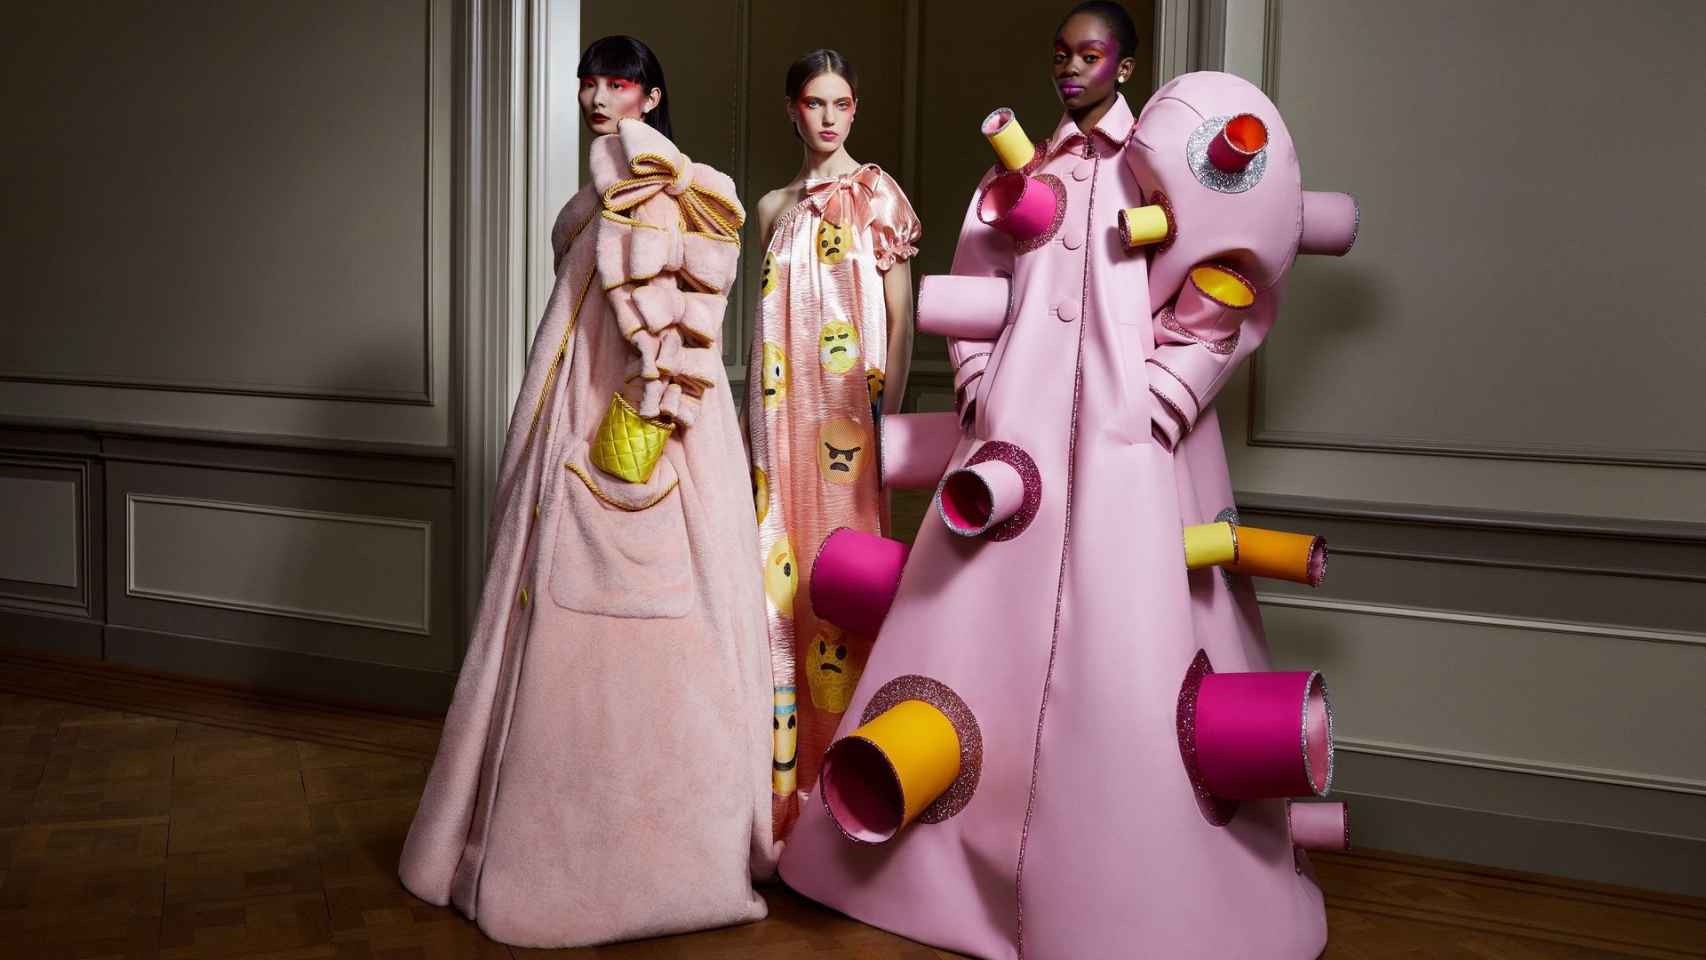 Varias modelos lucen creaciones otoño-invierno 2020-2021 de la firma Viktor&Rolf que se han visto en la Semana de la Alta Costura de París.